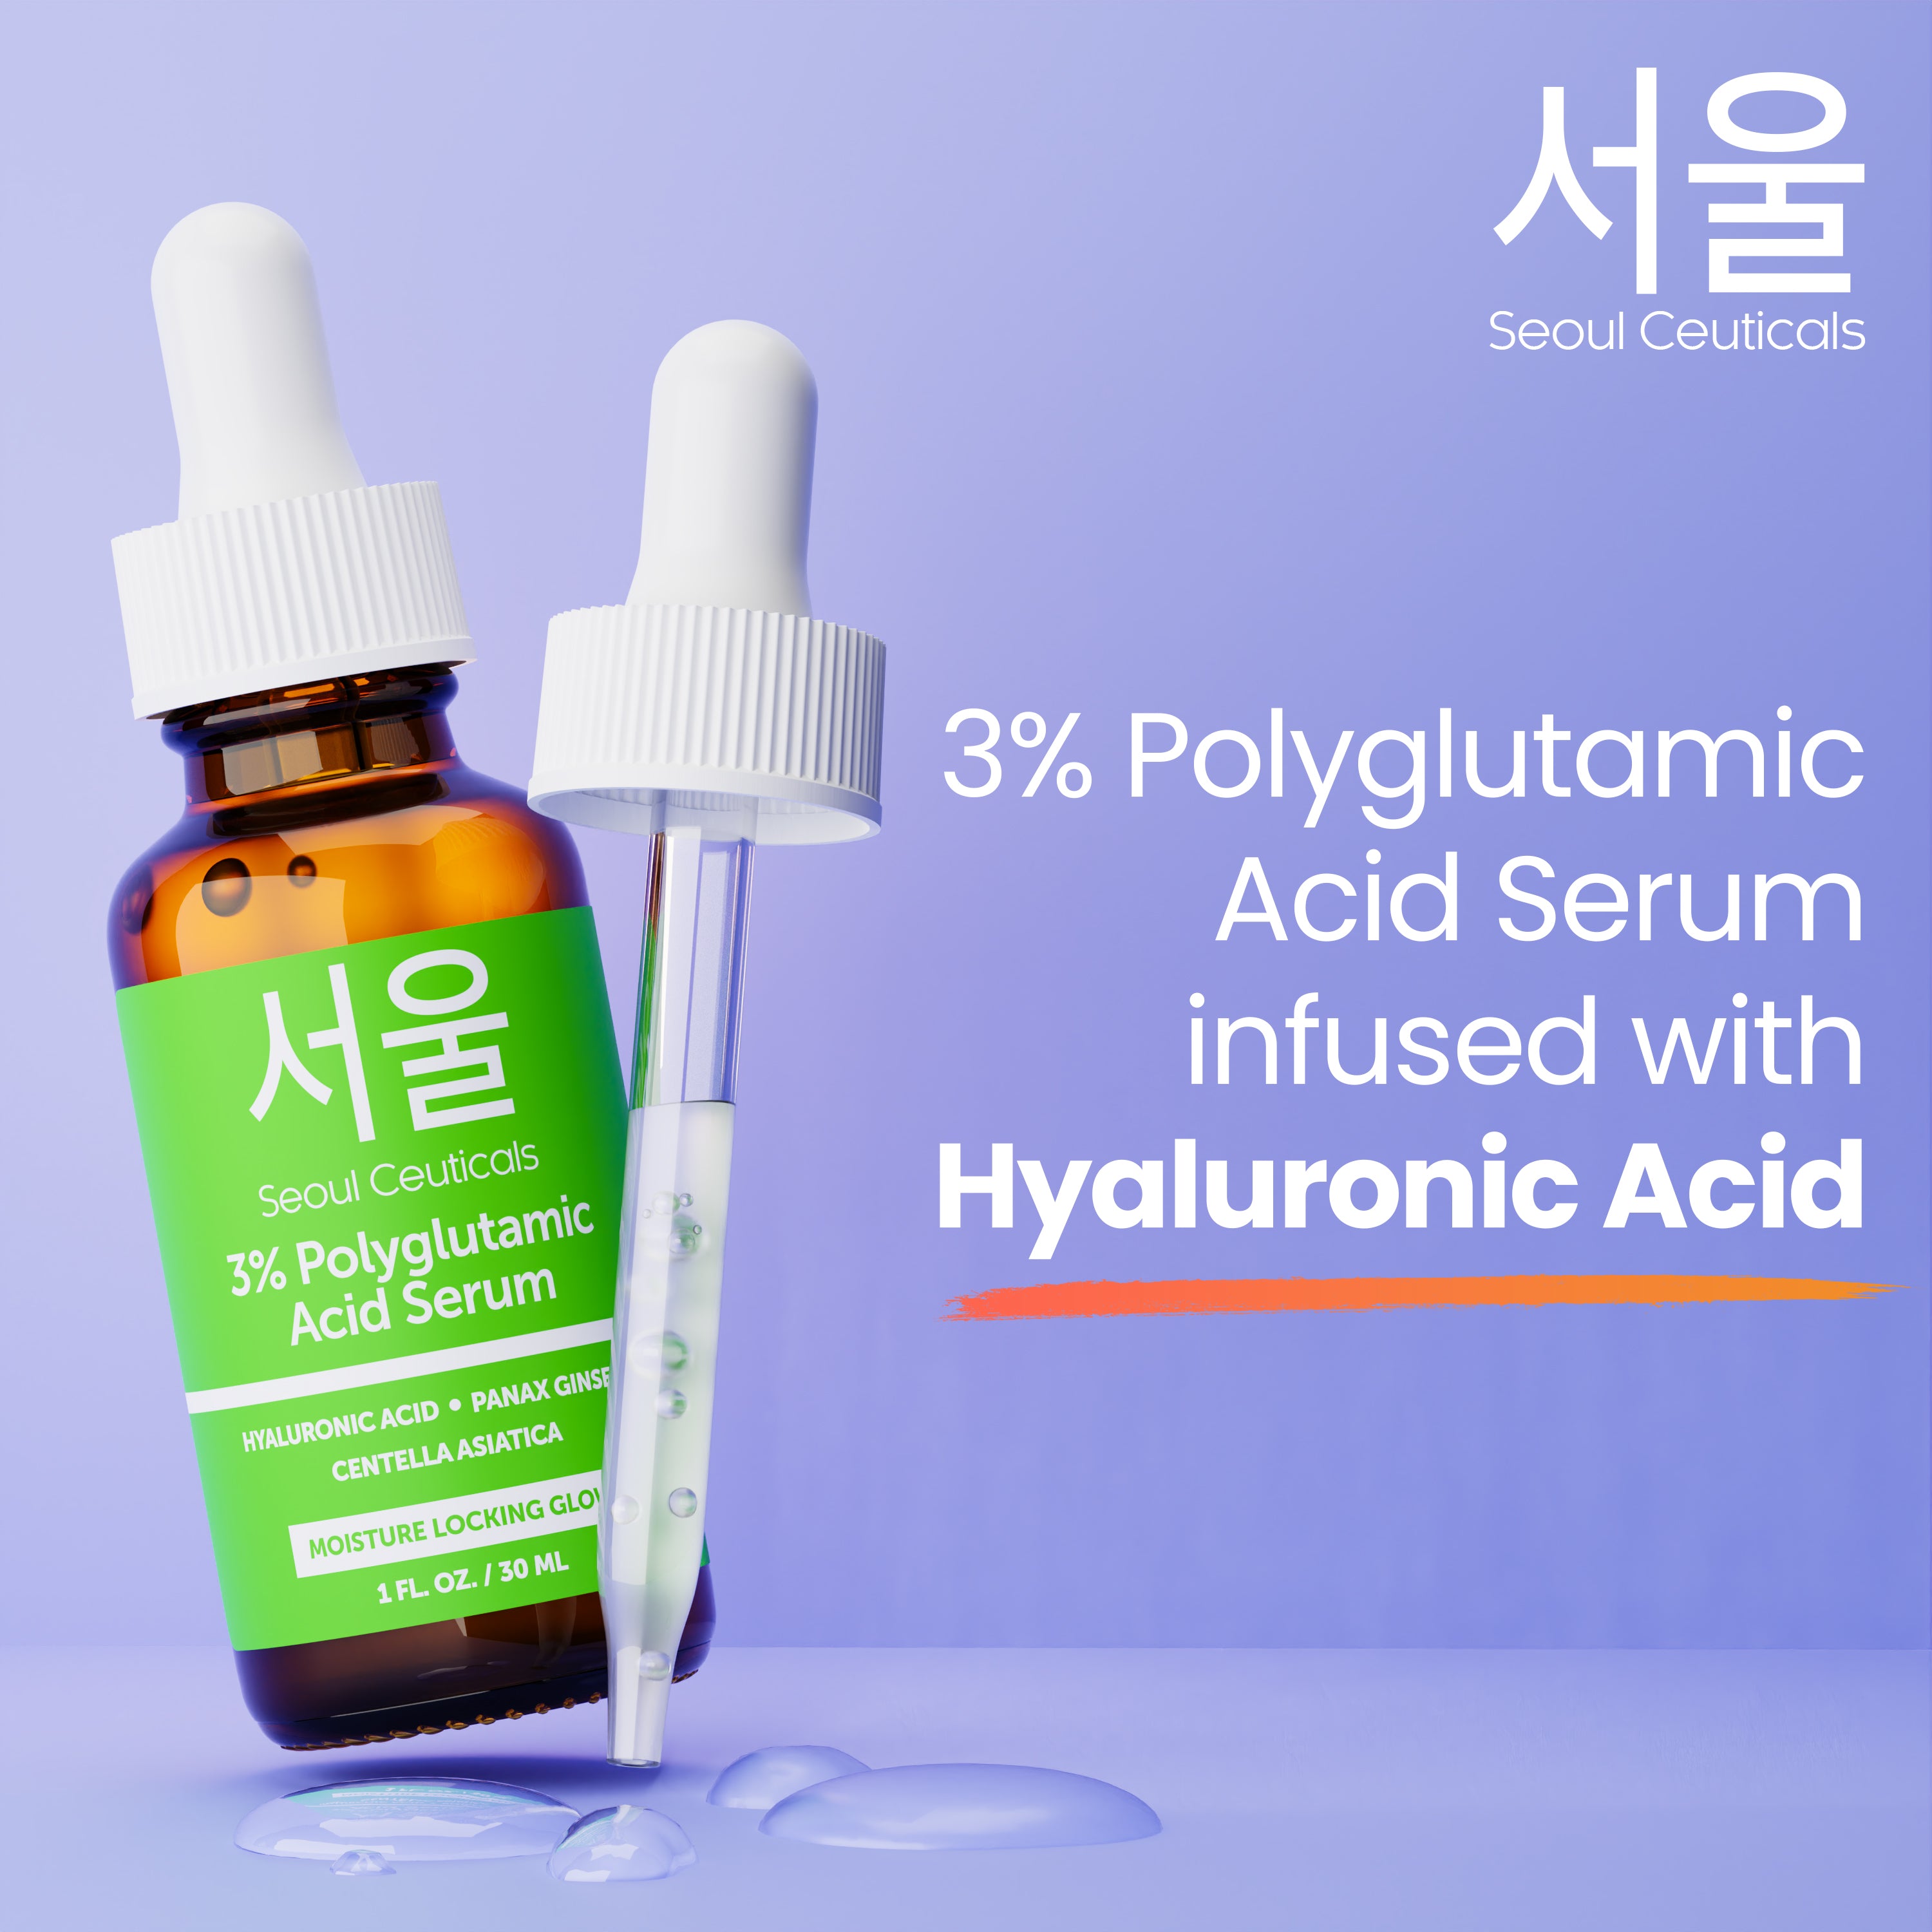 3% Polyglutamic Acid Serum